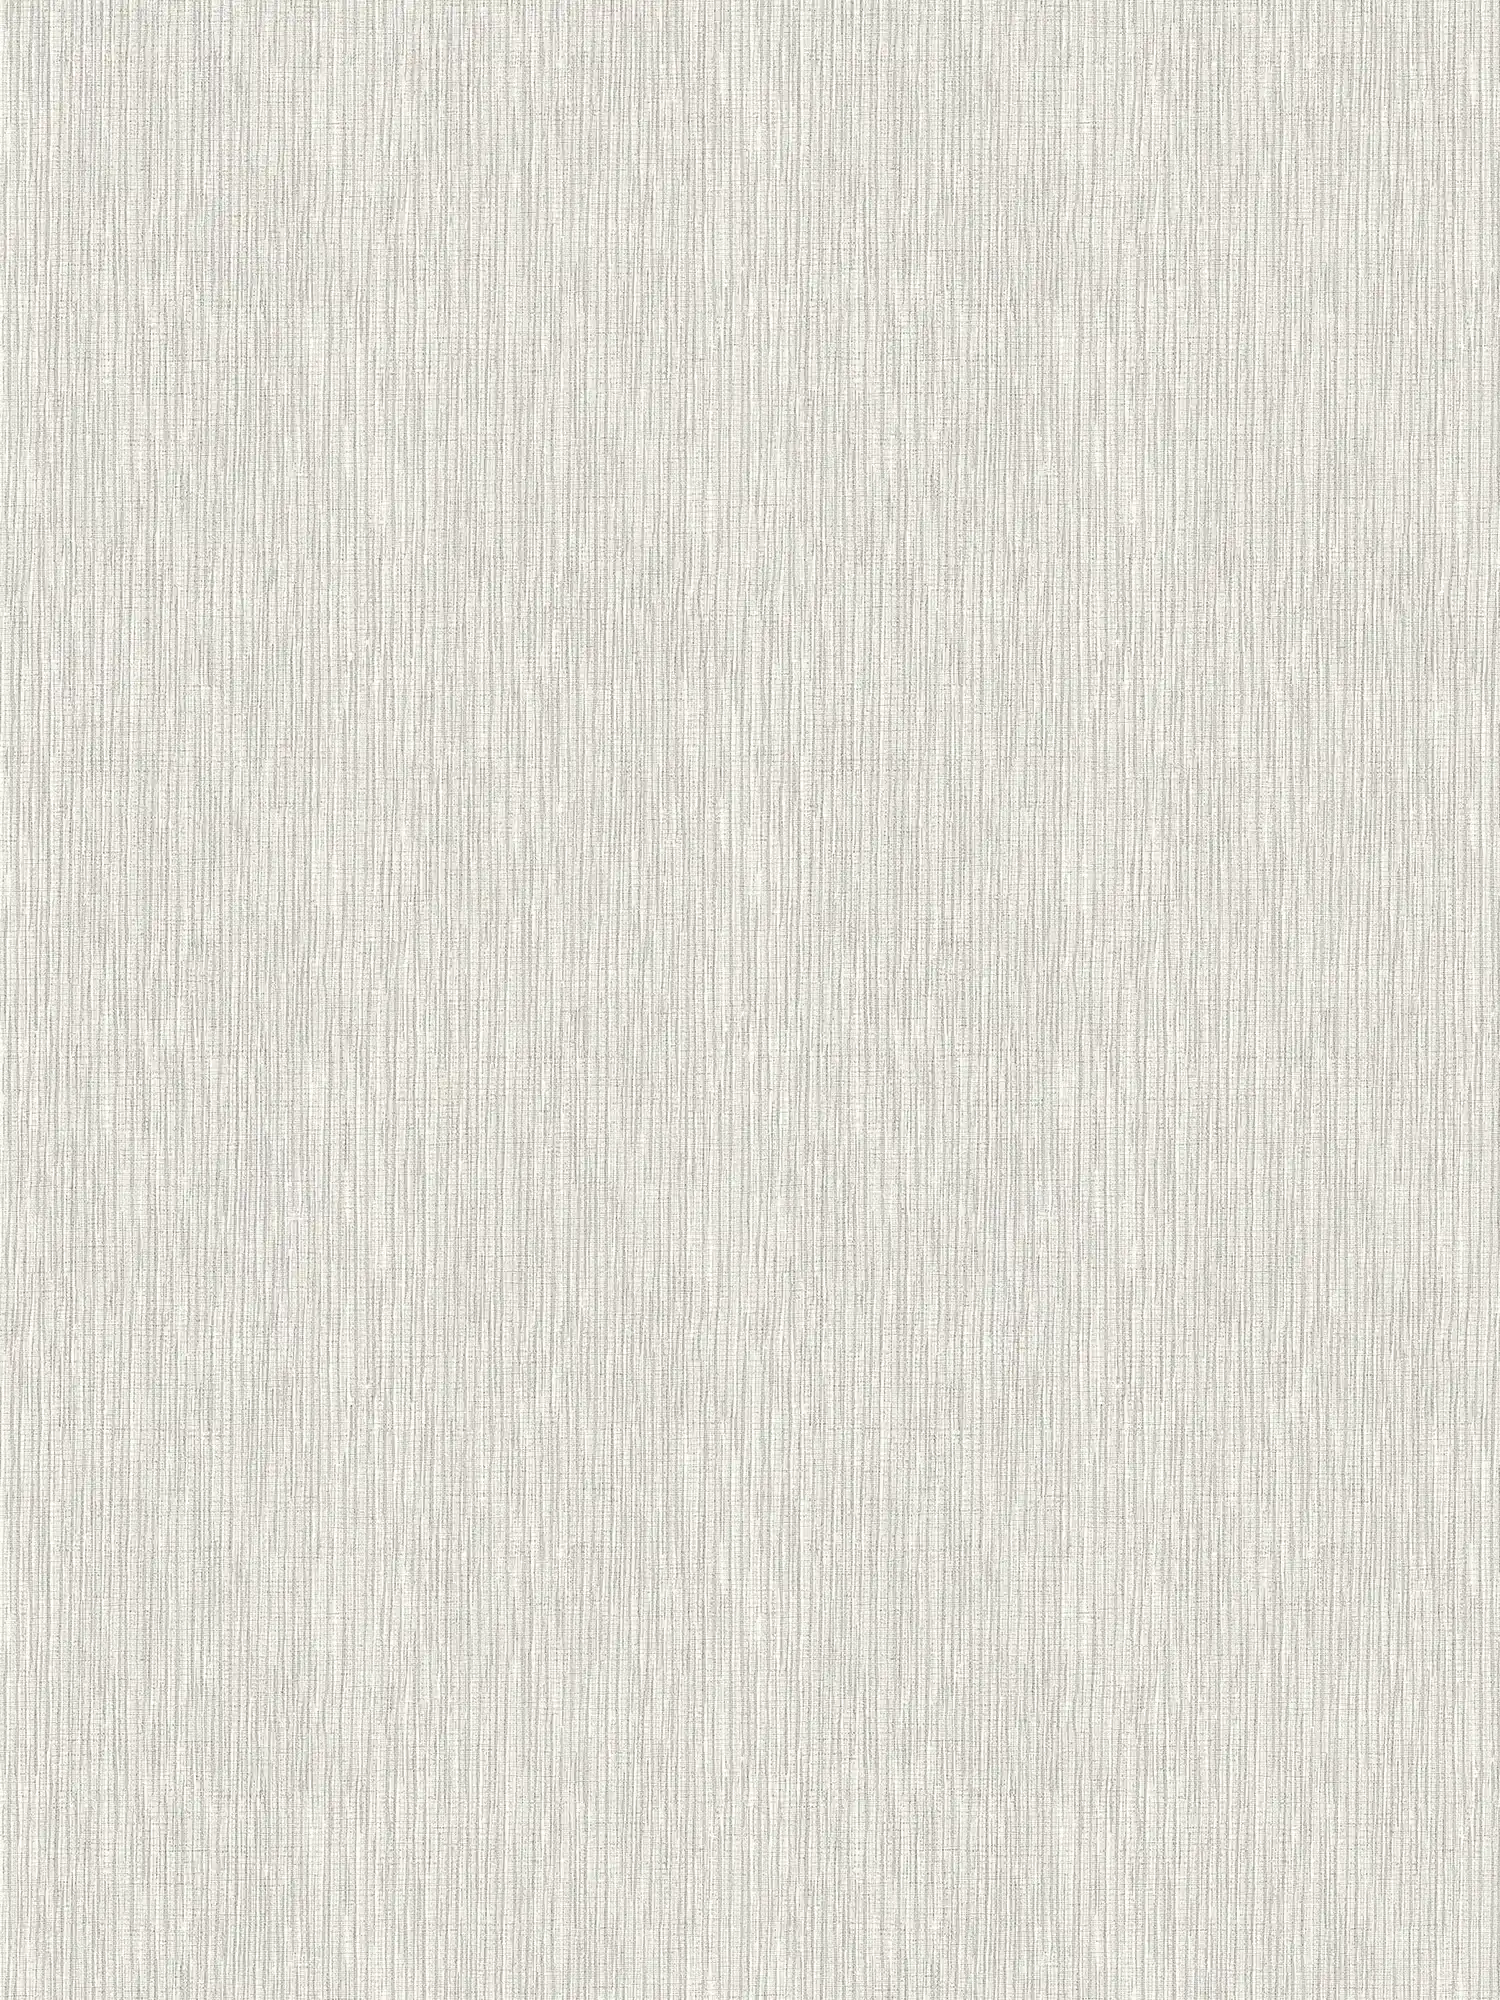 Grey wallpaper with metallic lines & texture embossing
